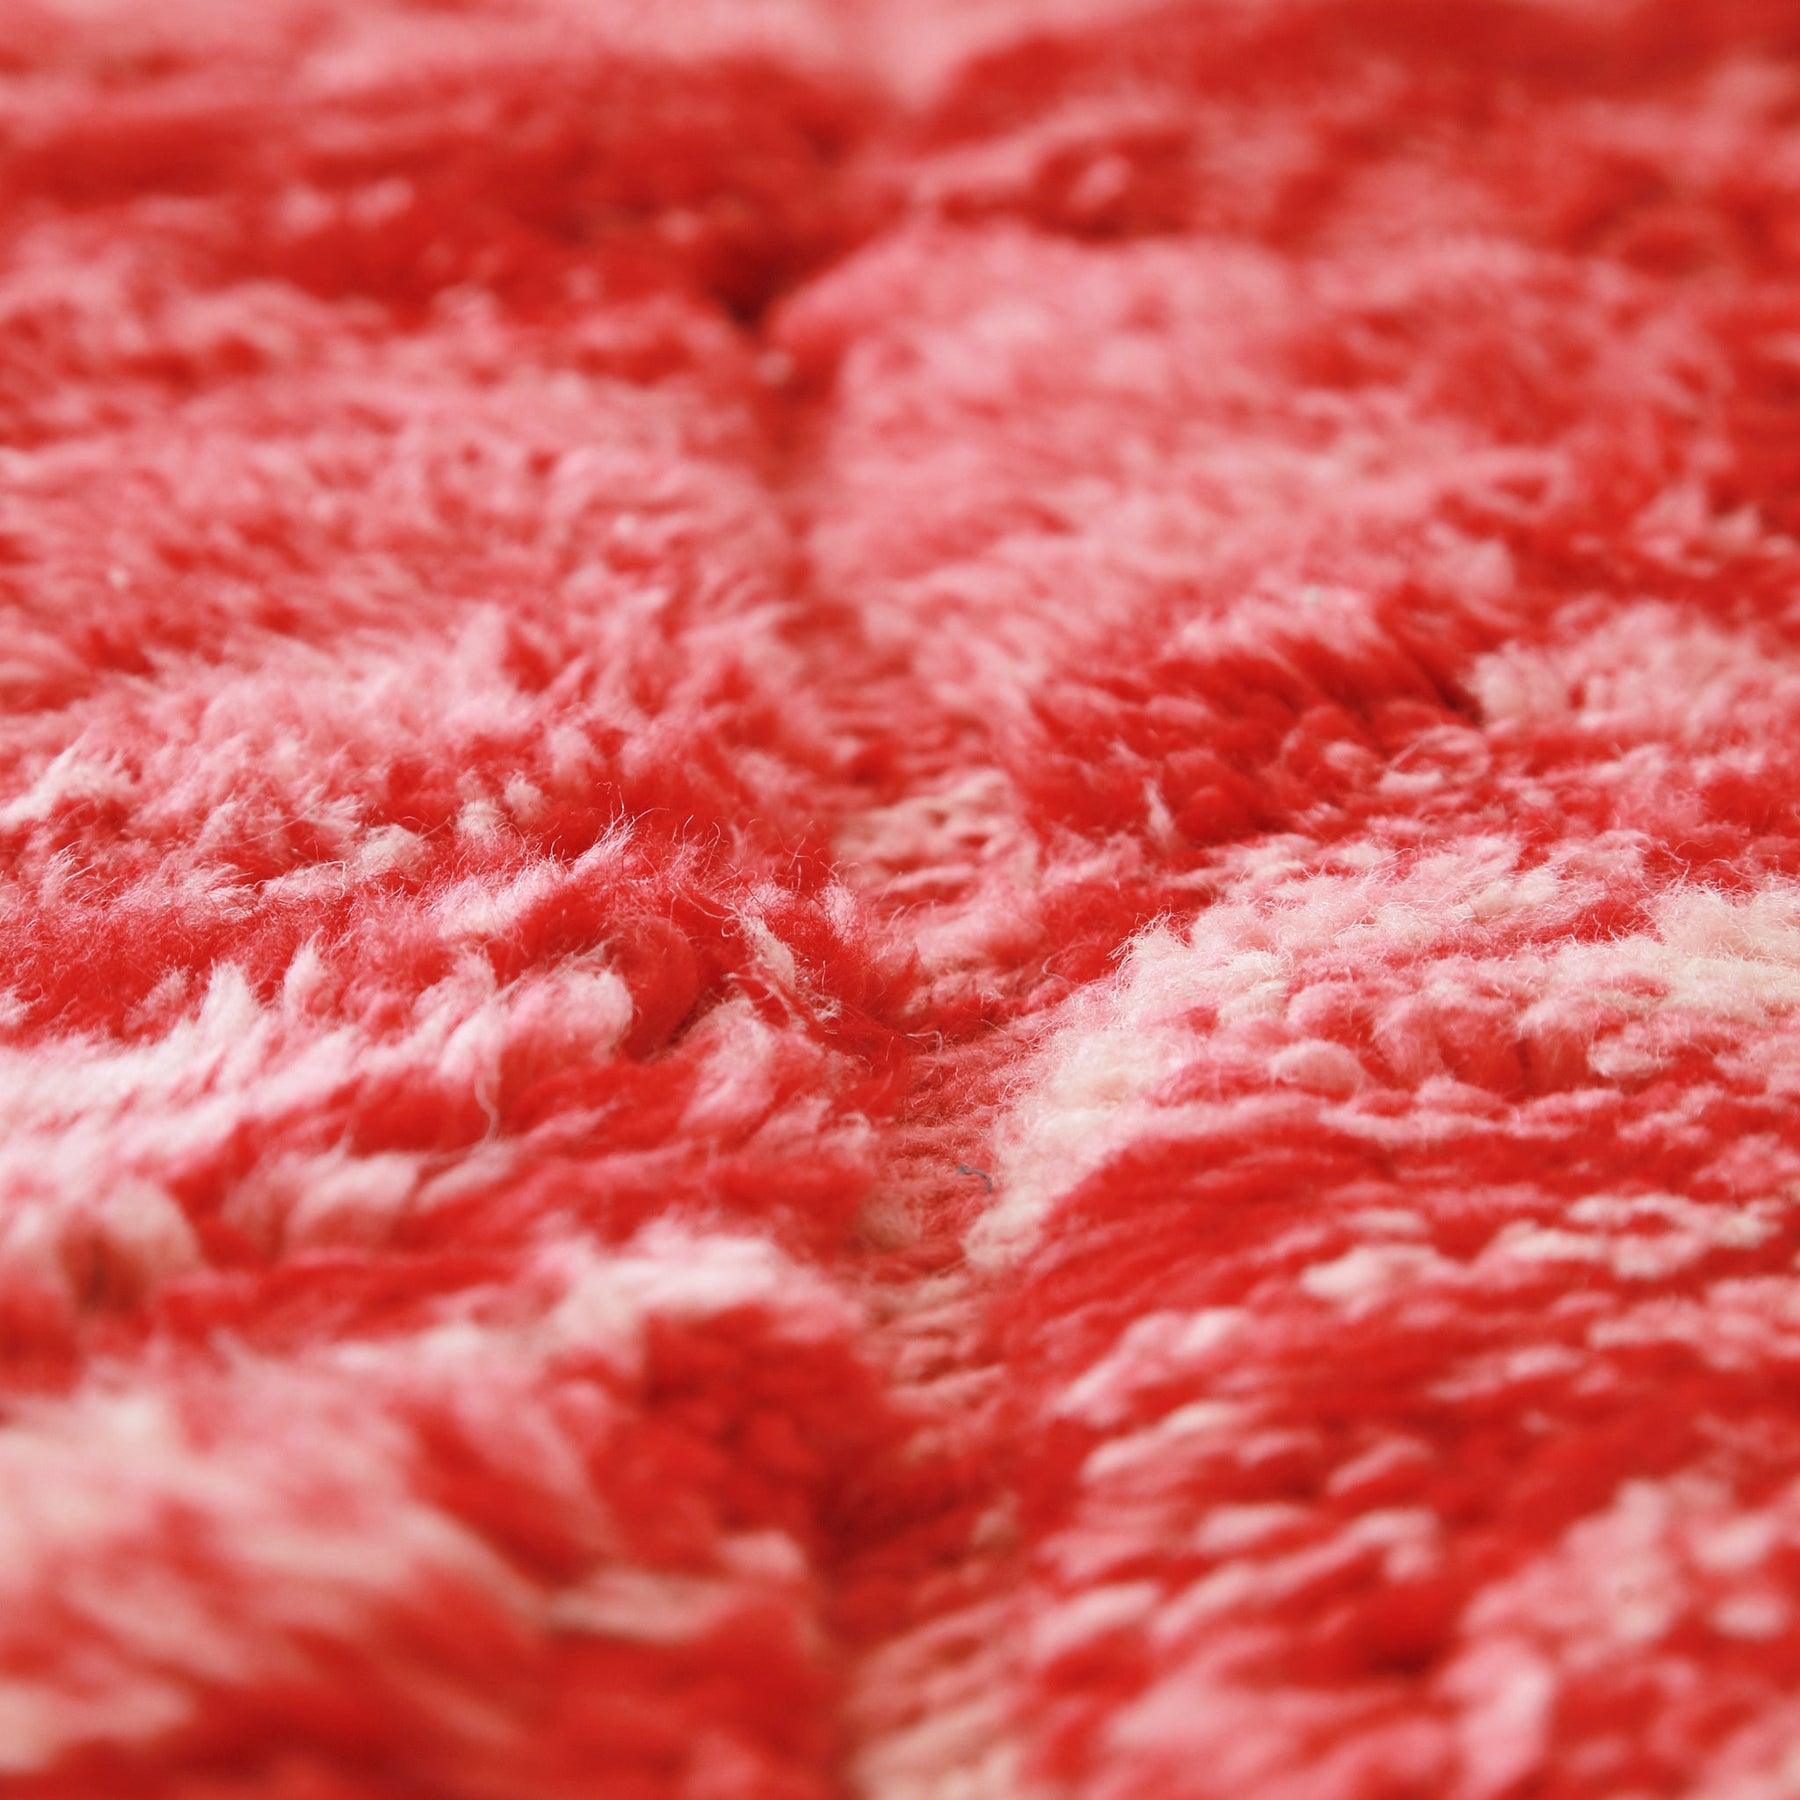 questa foto mette in risalto una delle linee prive di lana presenti in questo tappeto di lana rossa.